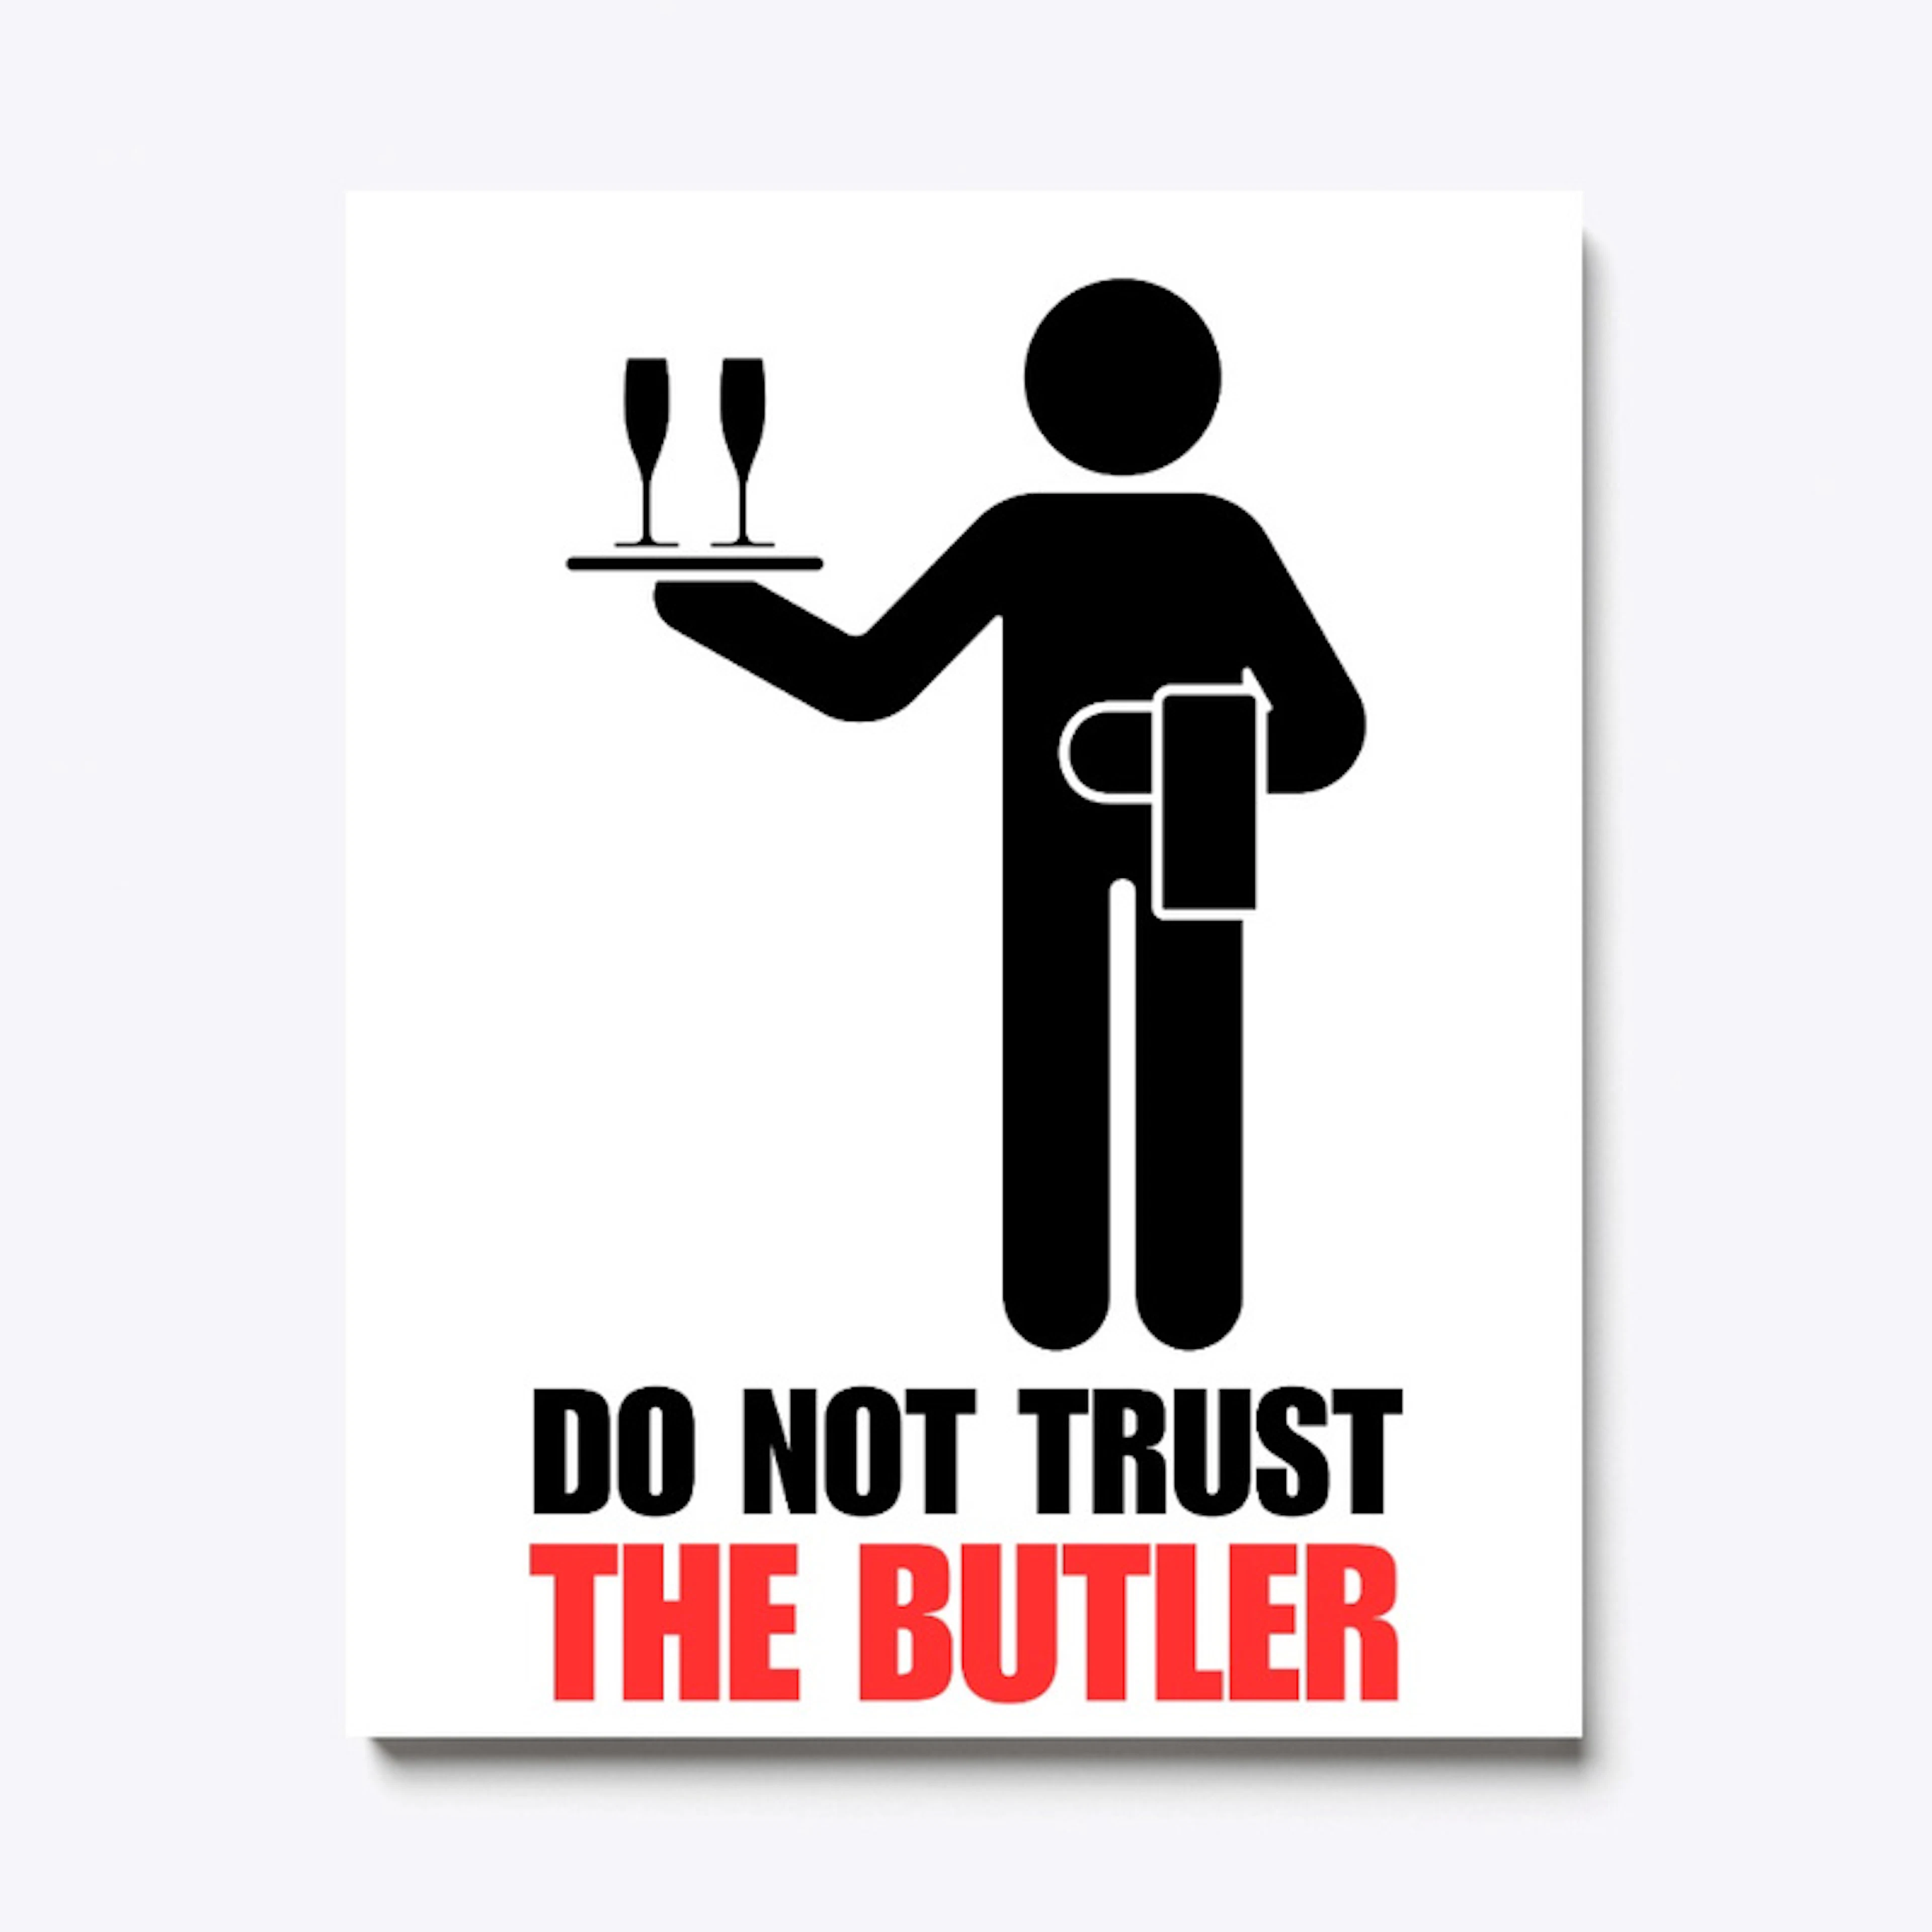 DO NOT TRUST THE BUTLER!